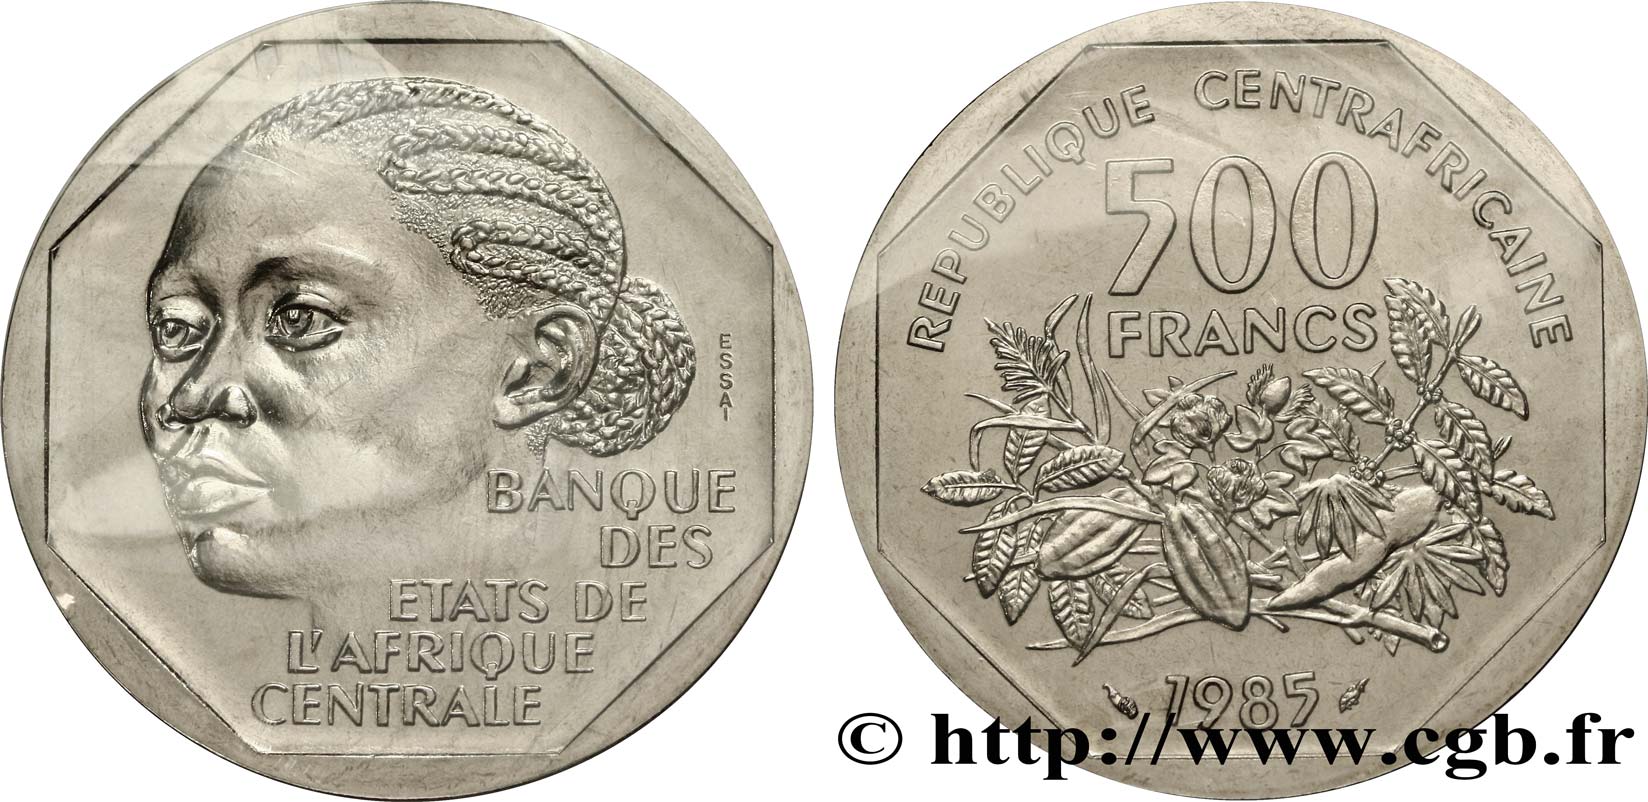 CENTRAL AFRICAN REPUBLIC Essai de 500 Francs femme africaine 1985 Paris MS 